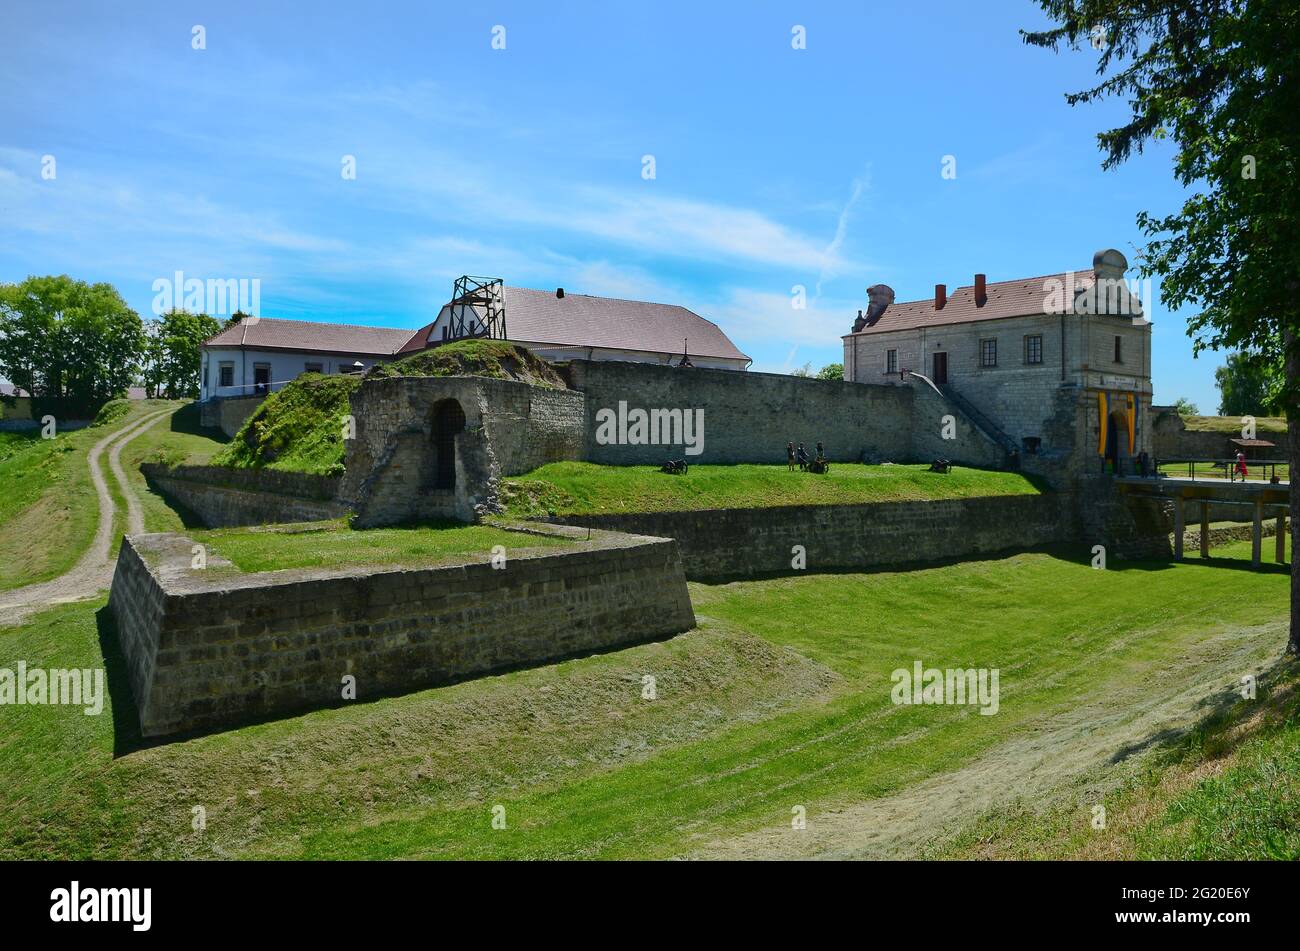 RÉGION DE TERNOPIL, UKRAINE - 27 MAI 2021 - dans les locaux du château de Zbarazh, région de Ternopil, Ukraine occidentale Banque D'Images